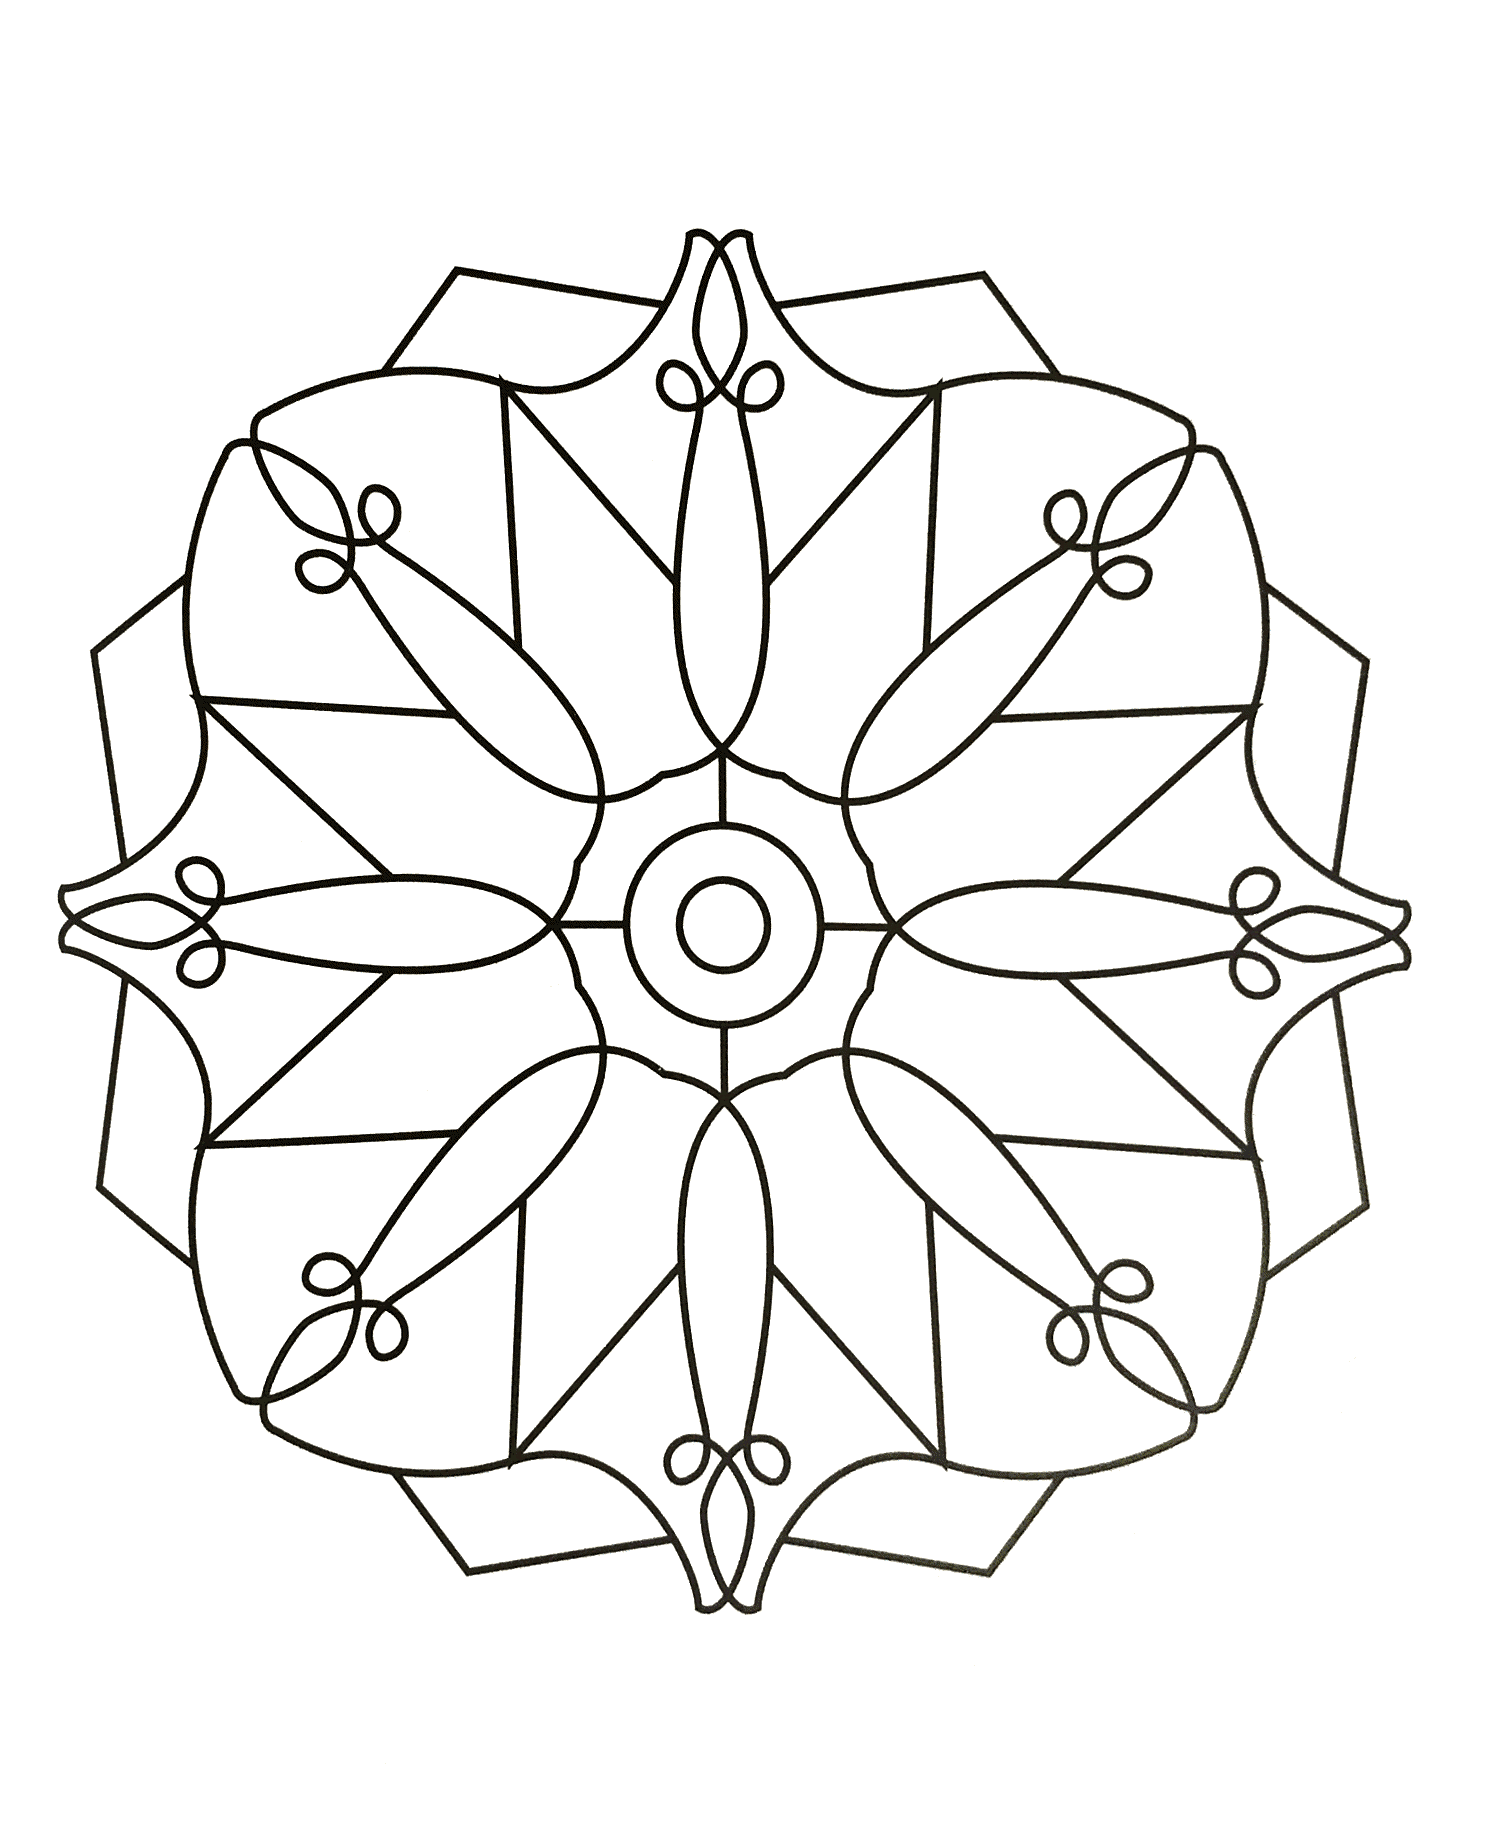 Desenho de Mandala para colorir  Desenhos para colorir e imprimir gratis